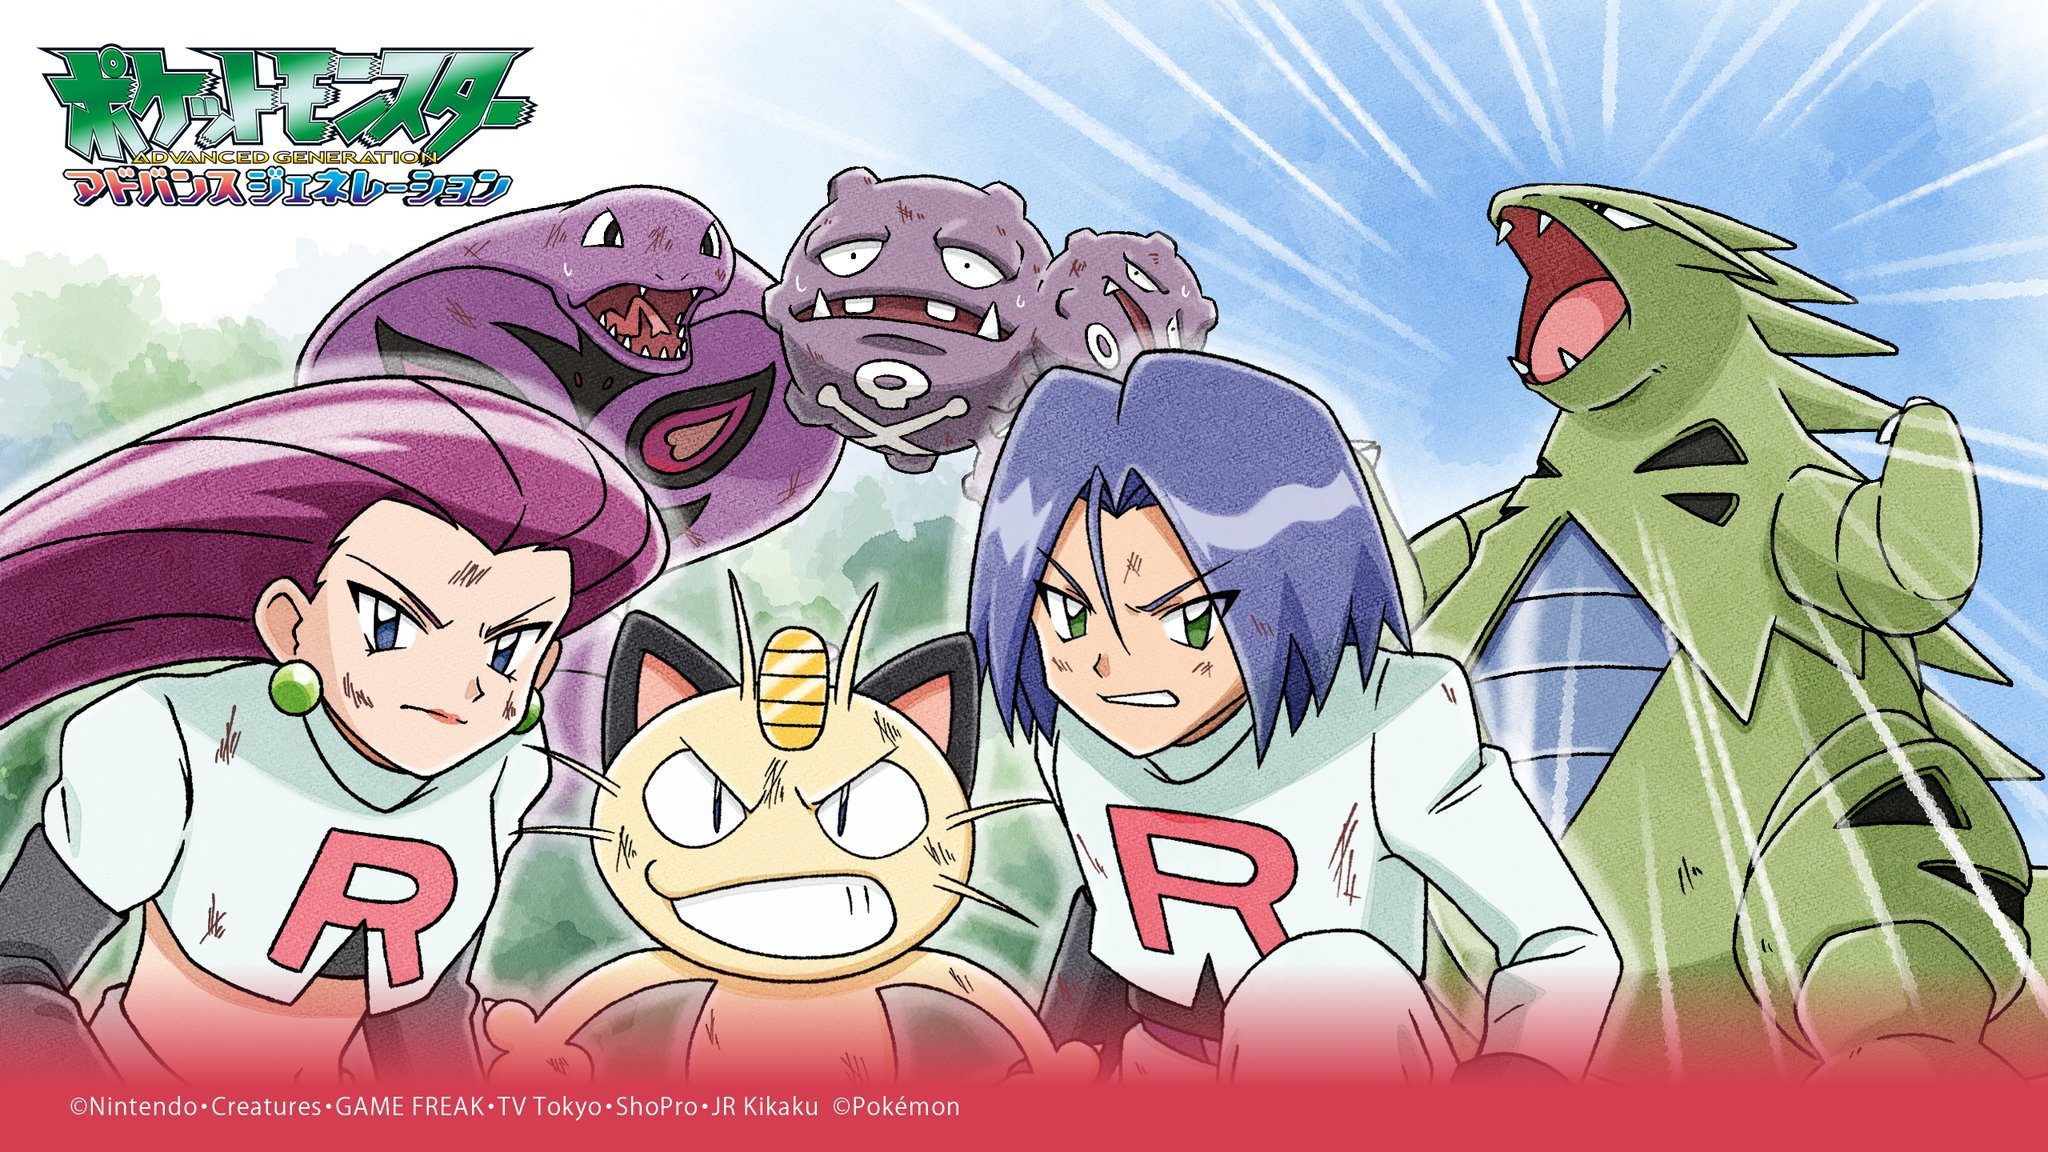 Descarga gratuita de fondo de pantalla para móvil de Pokémon, Animado, Meowth (Pokémon), Jessie (Pokémon), James (Pokémon).